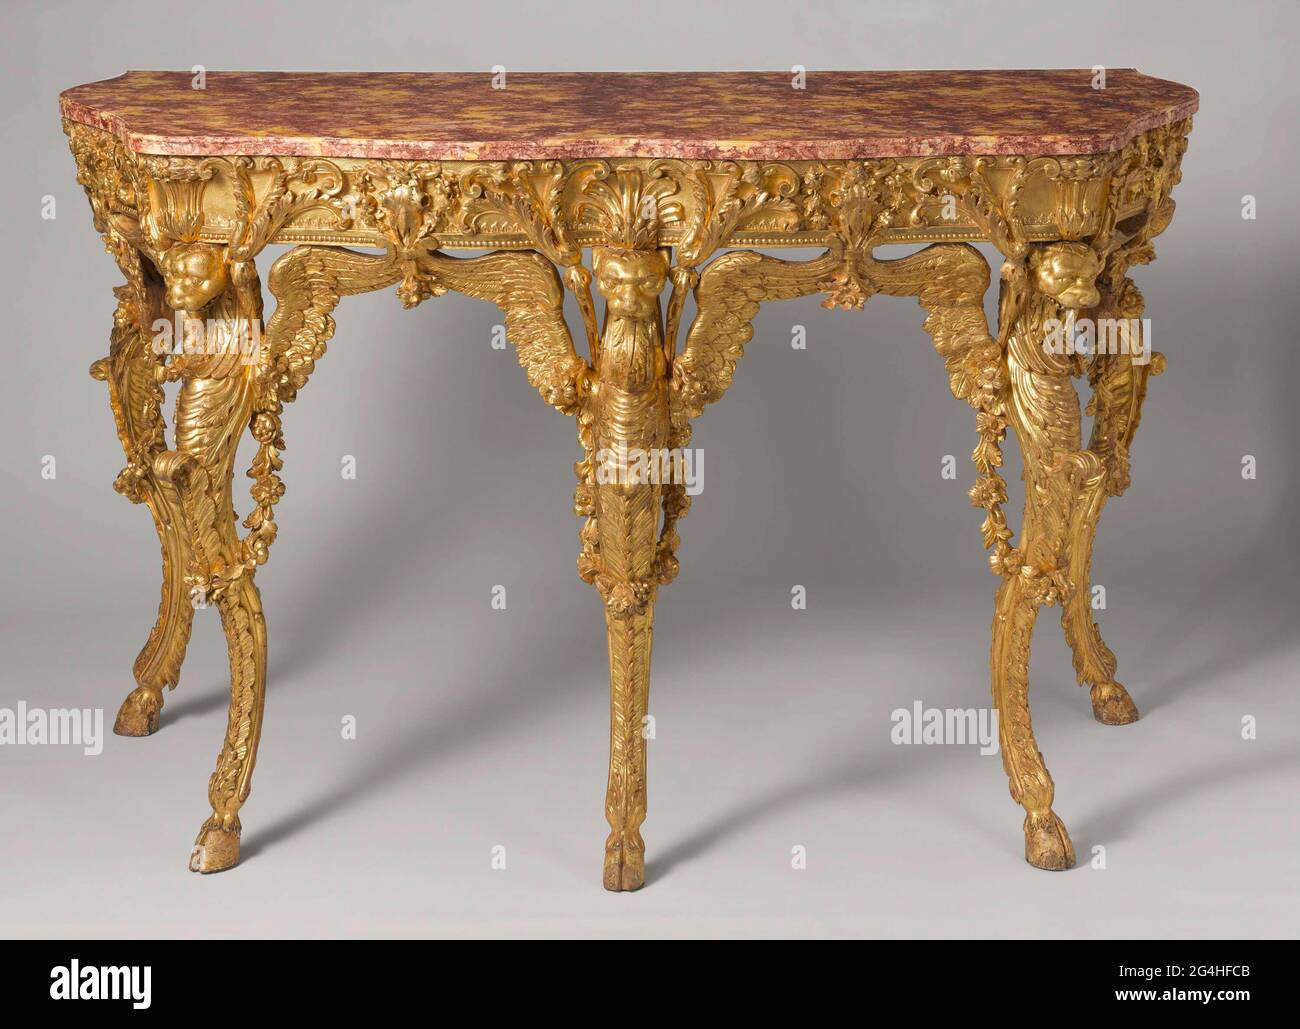 Esta mesa de consola es el único mueble conocido con certeza por haber sido  diseñado por Piranesi. Con sus extrañas piernas en forma de animales  imaginarios alados, esta mesa es un